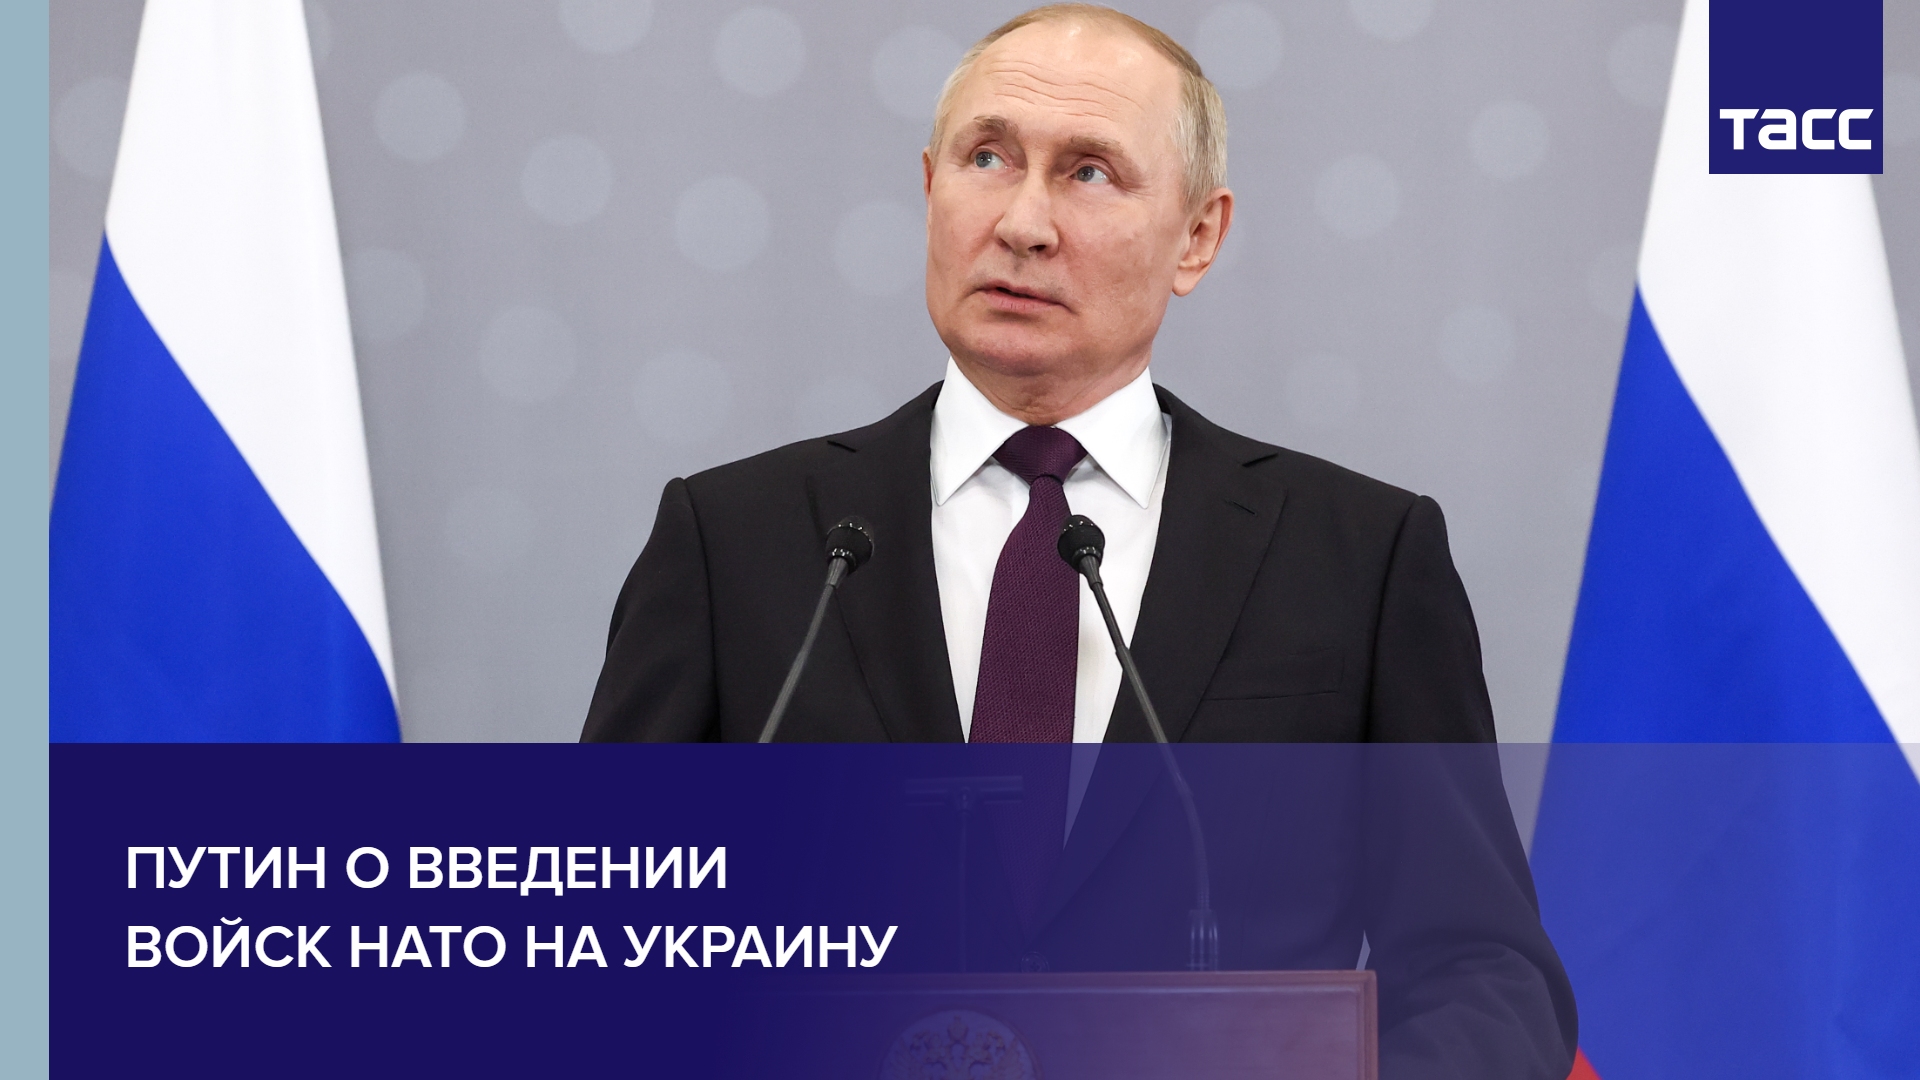 Путин о введении войск НАТО на Украину #shorts